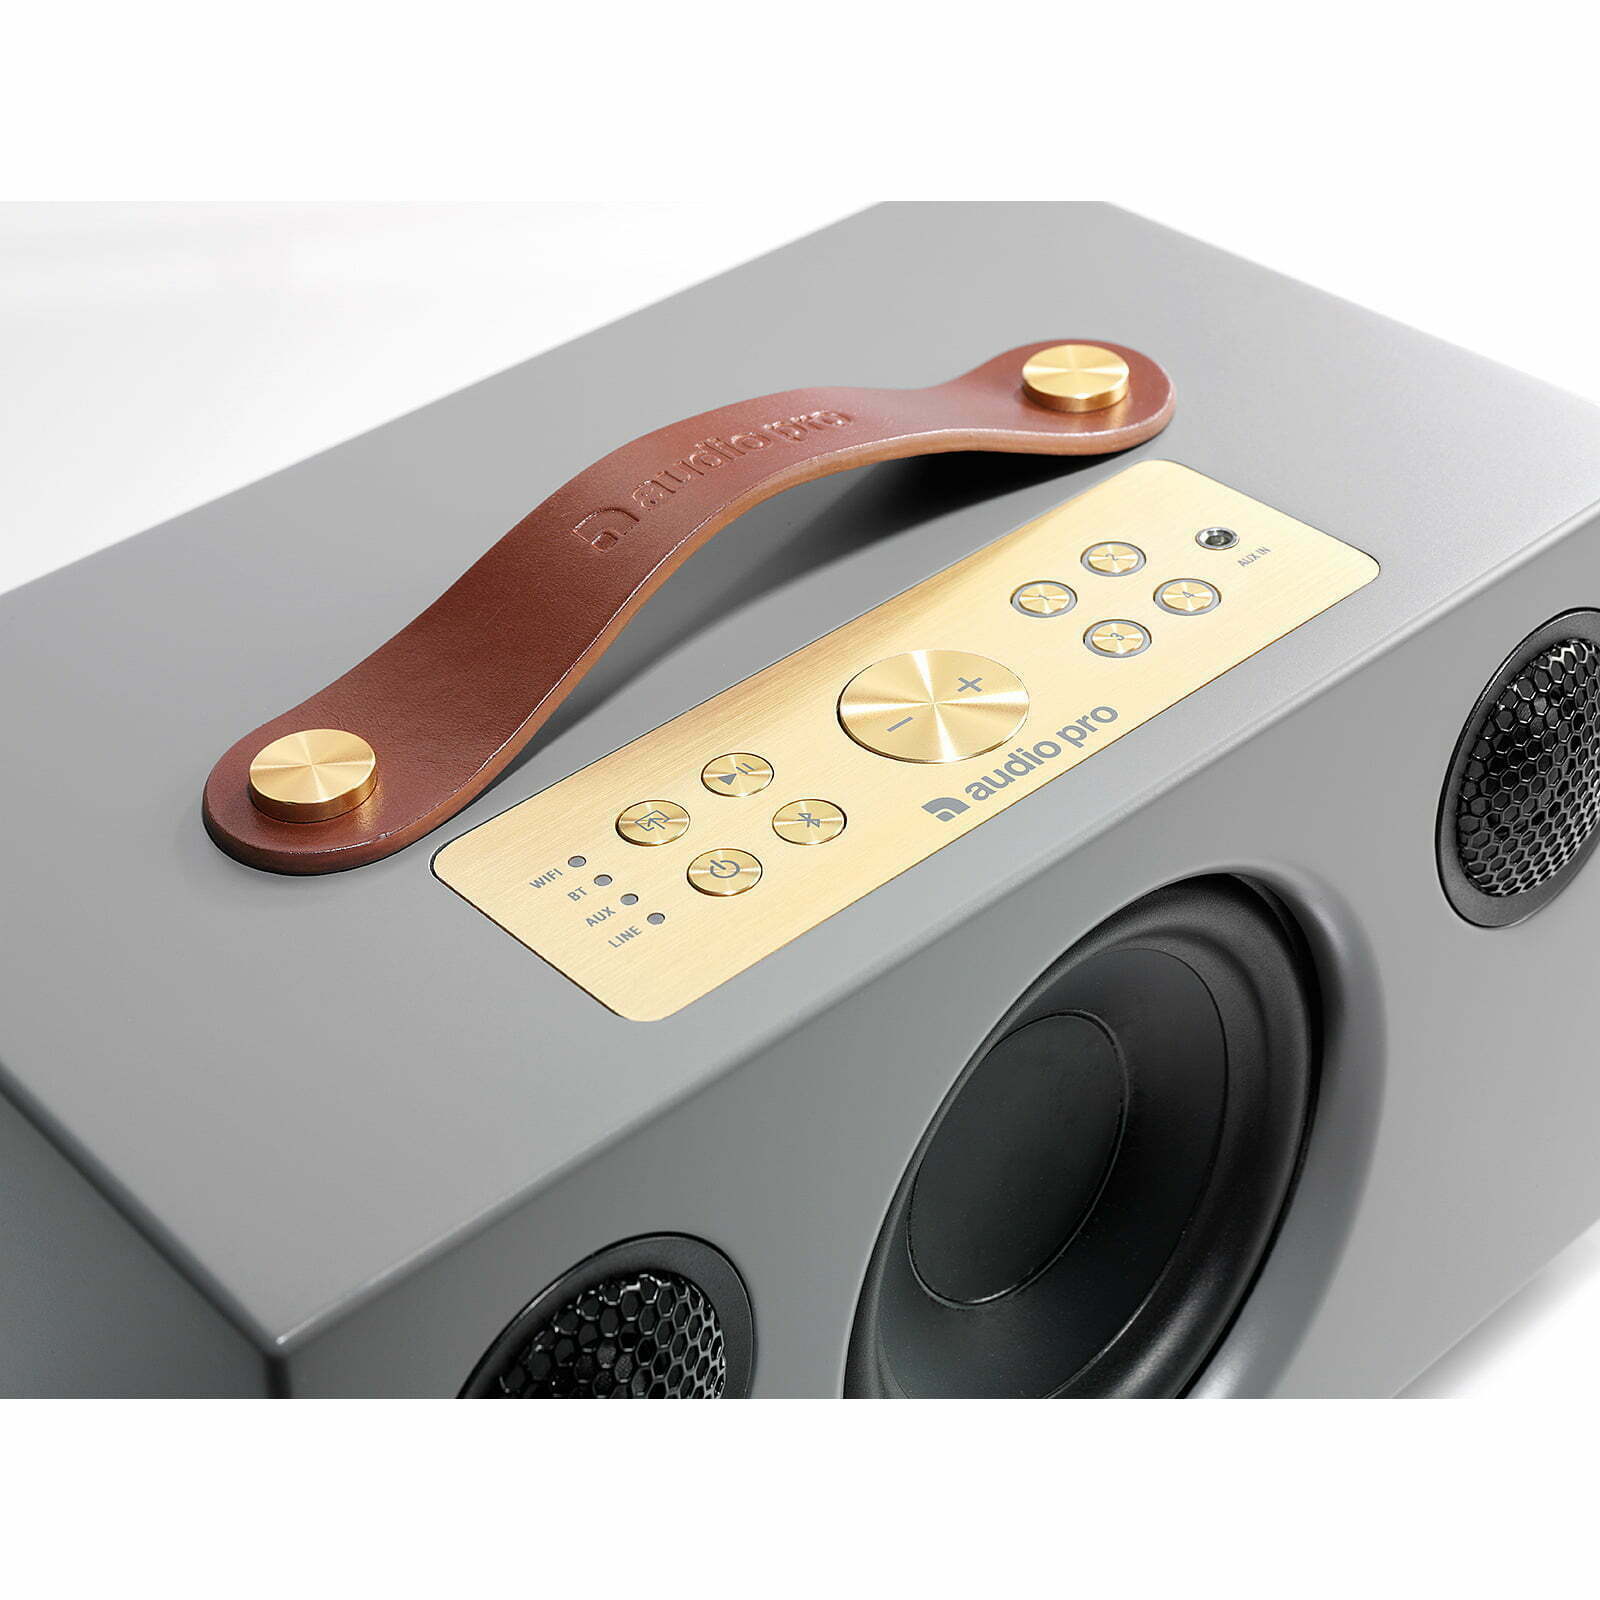 רמקול Audio Pro ADDON C5